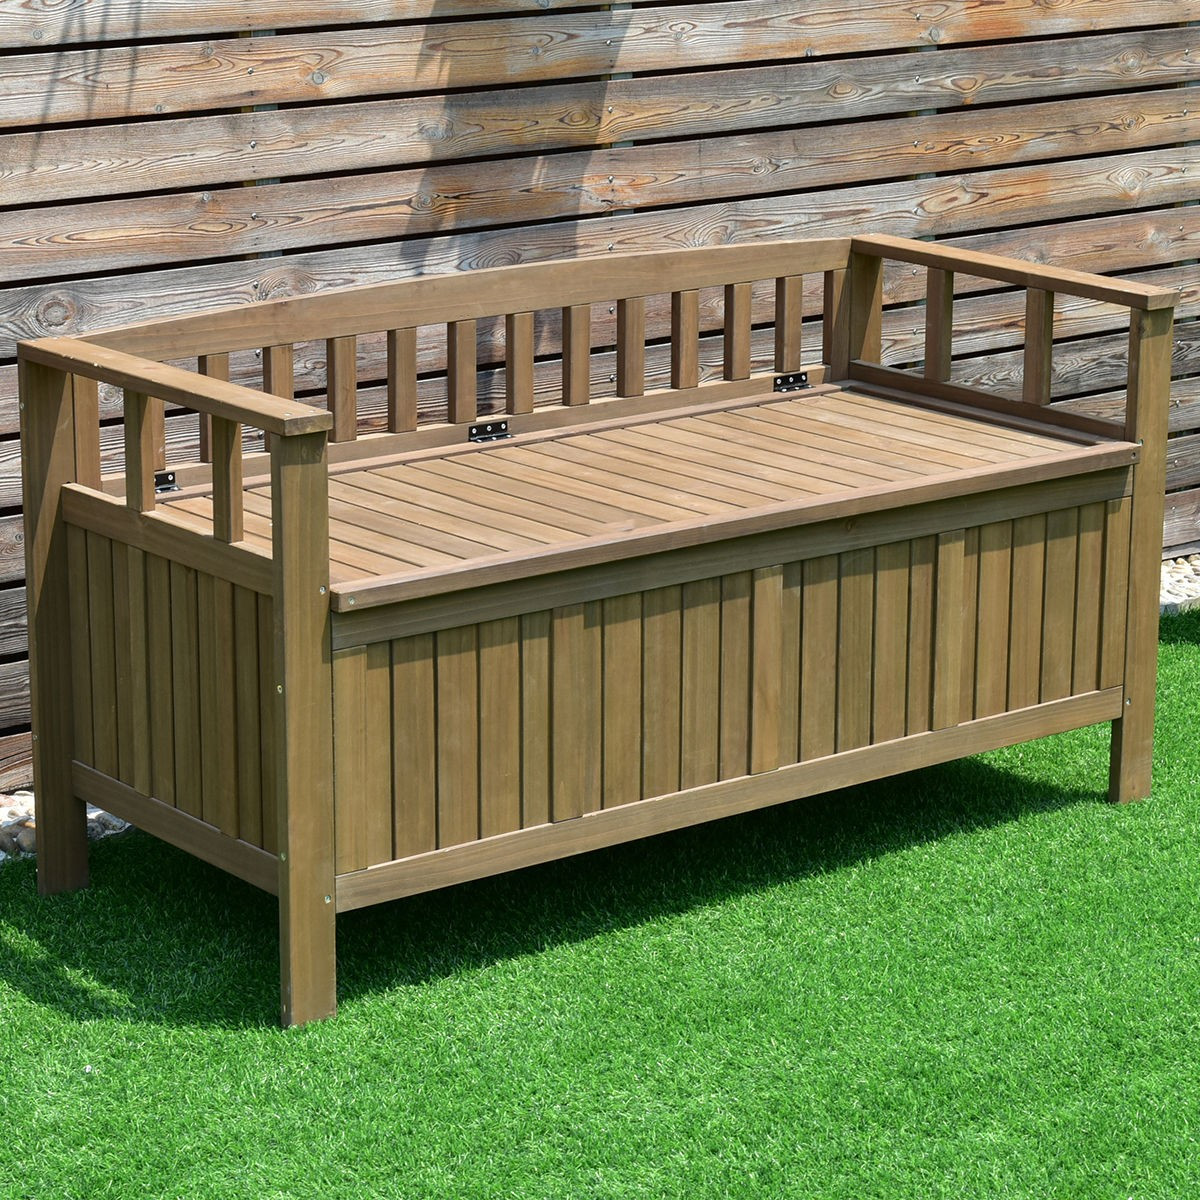 Outdoor Bench With Storage
 70 Gallon 2 in 1 Outdoor Garden Bench Storage Deck Box